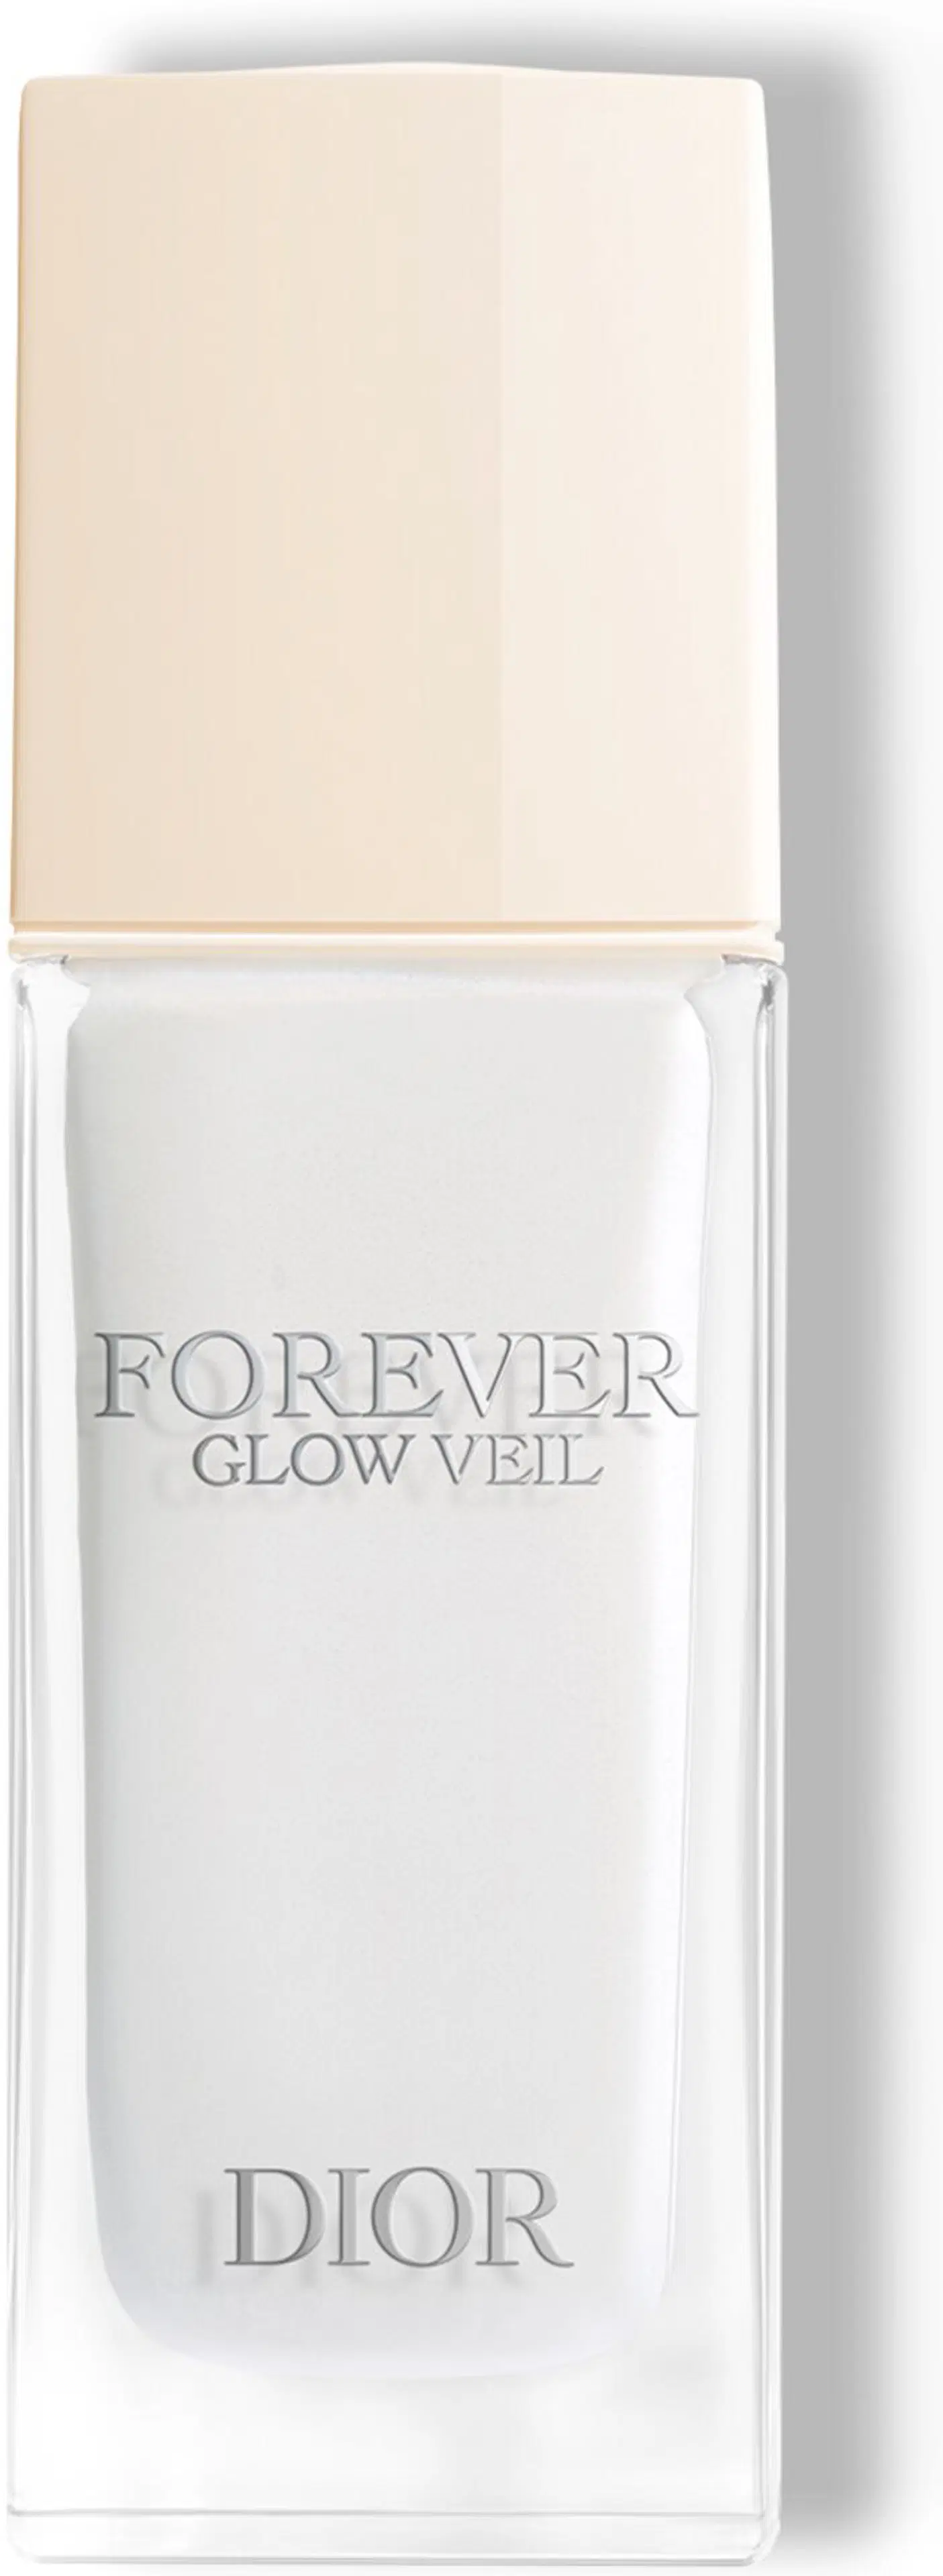 DIOR Forever Glow Veil Radiance Primer meikinpohjustusvoide 30 ml